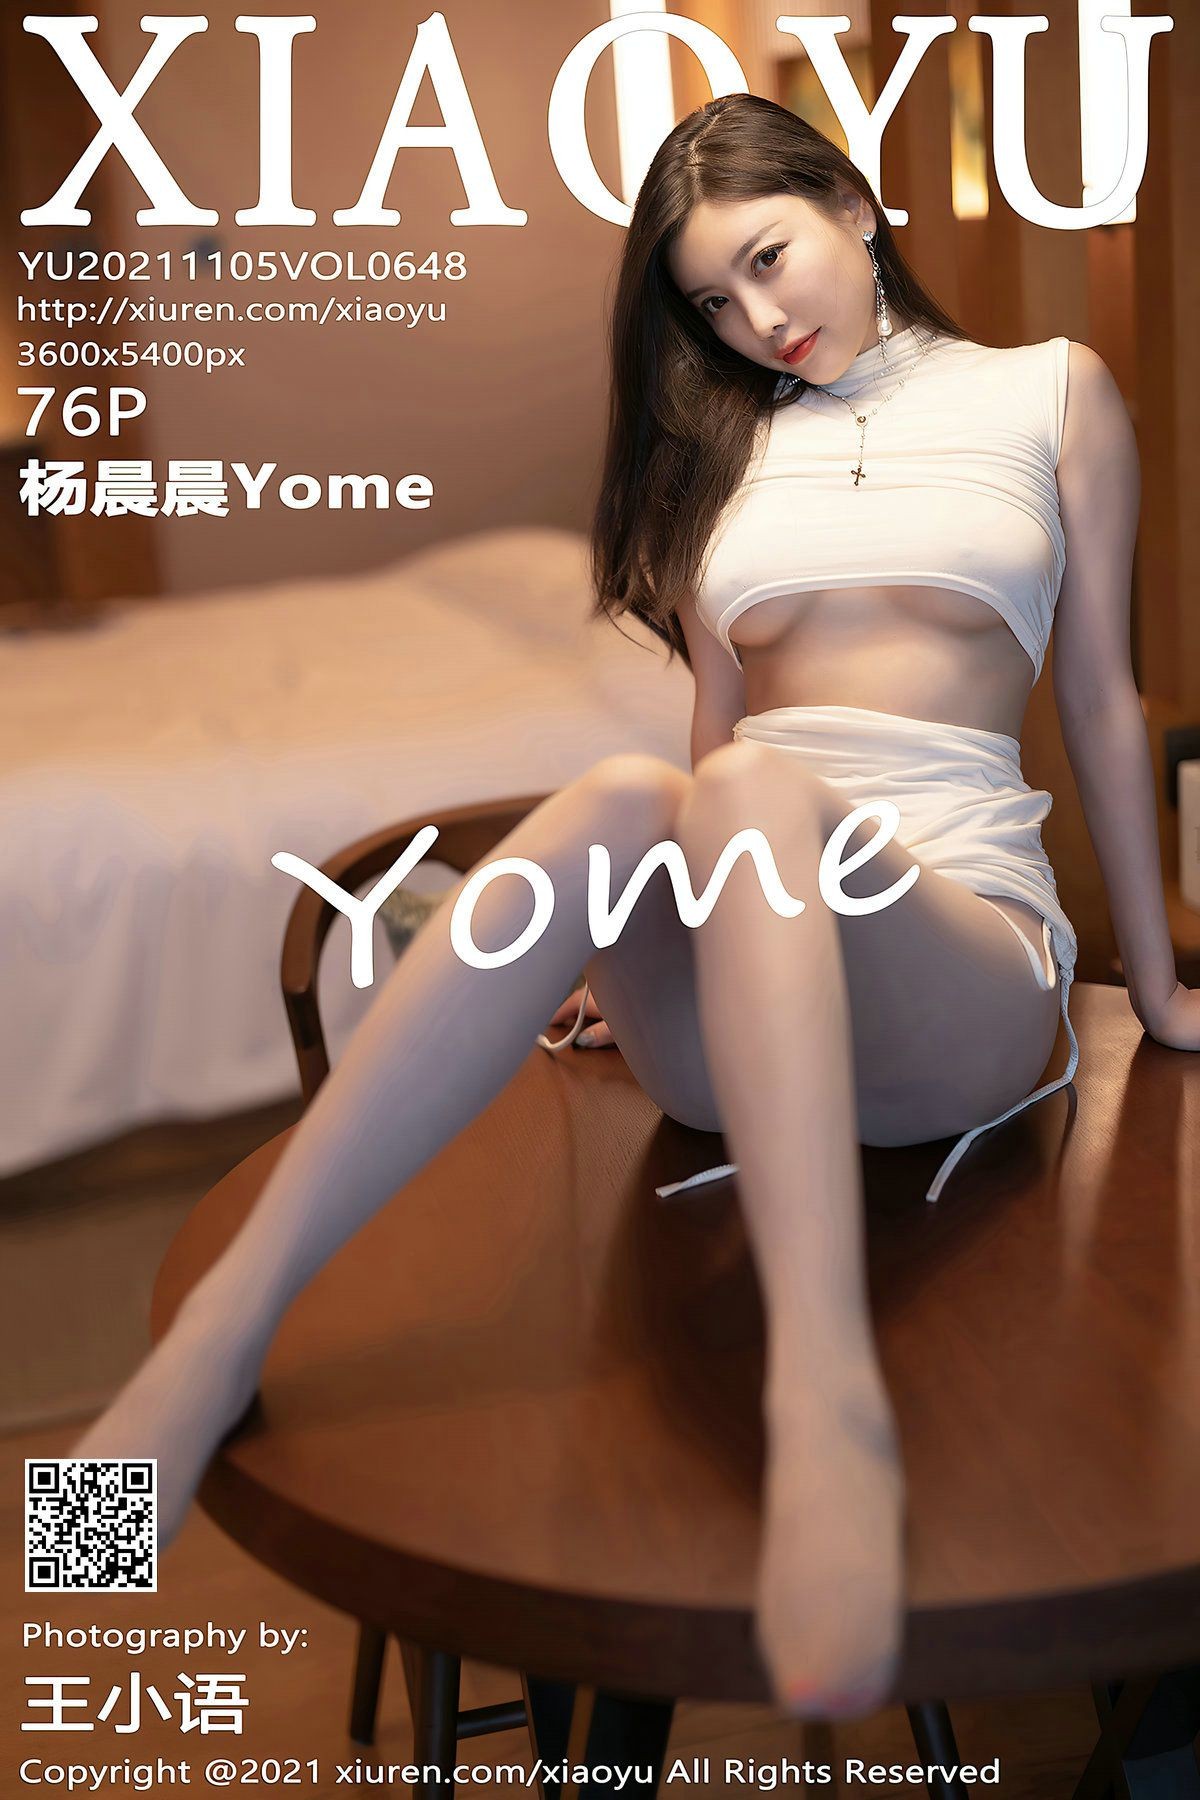 XIAOYU语画界性感模特写真第Vol.648期杨晨晨Yome (78)